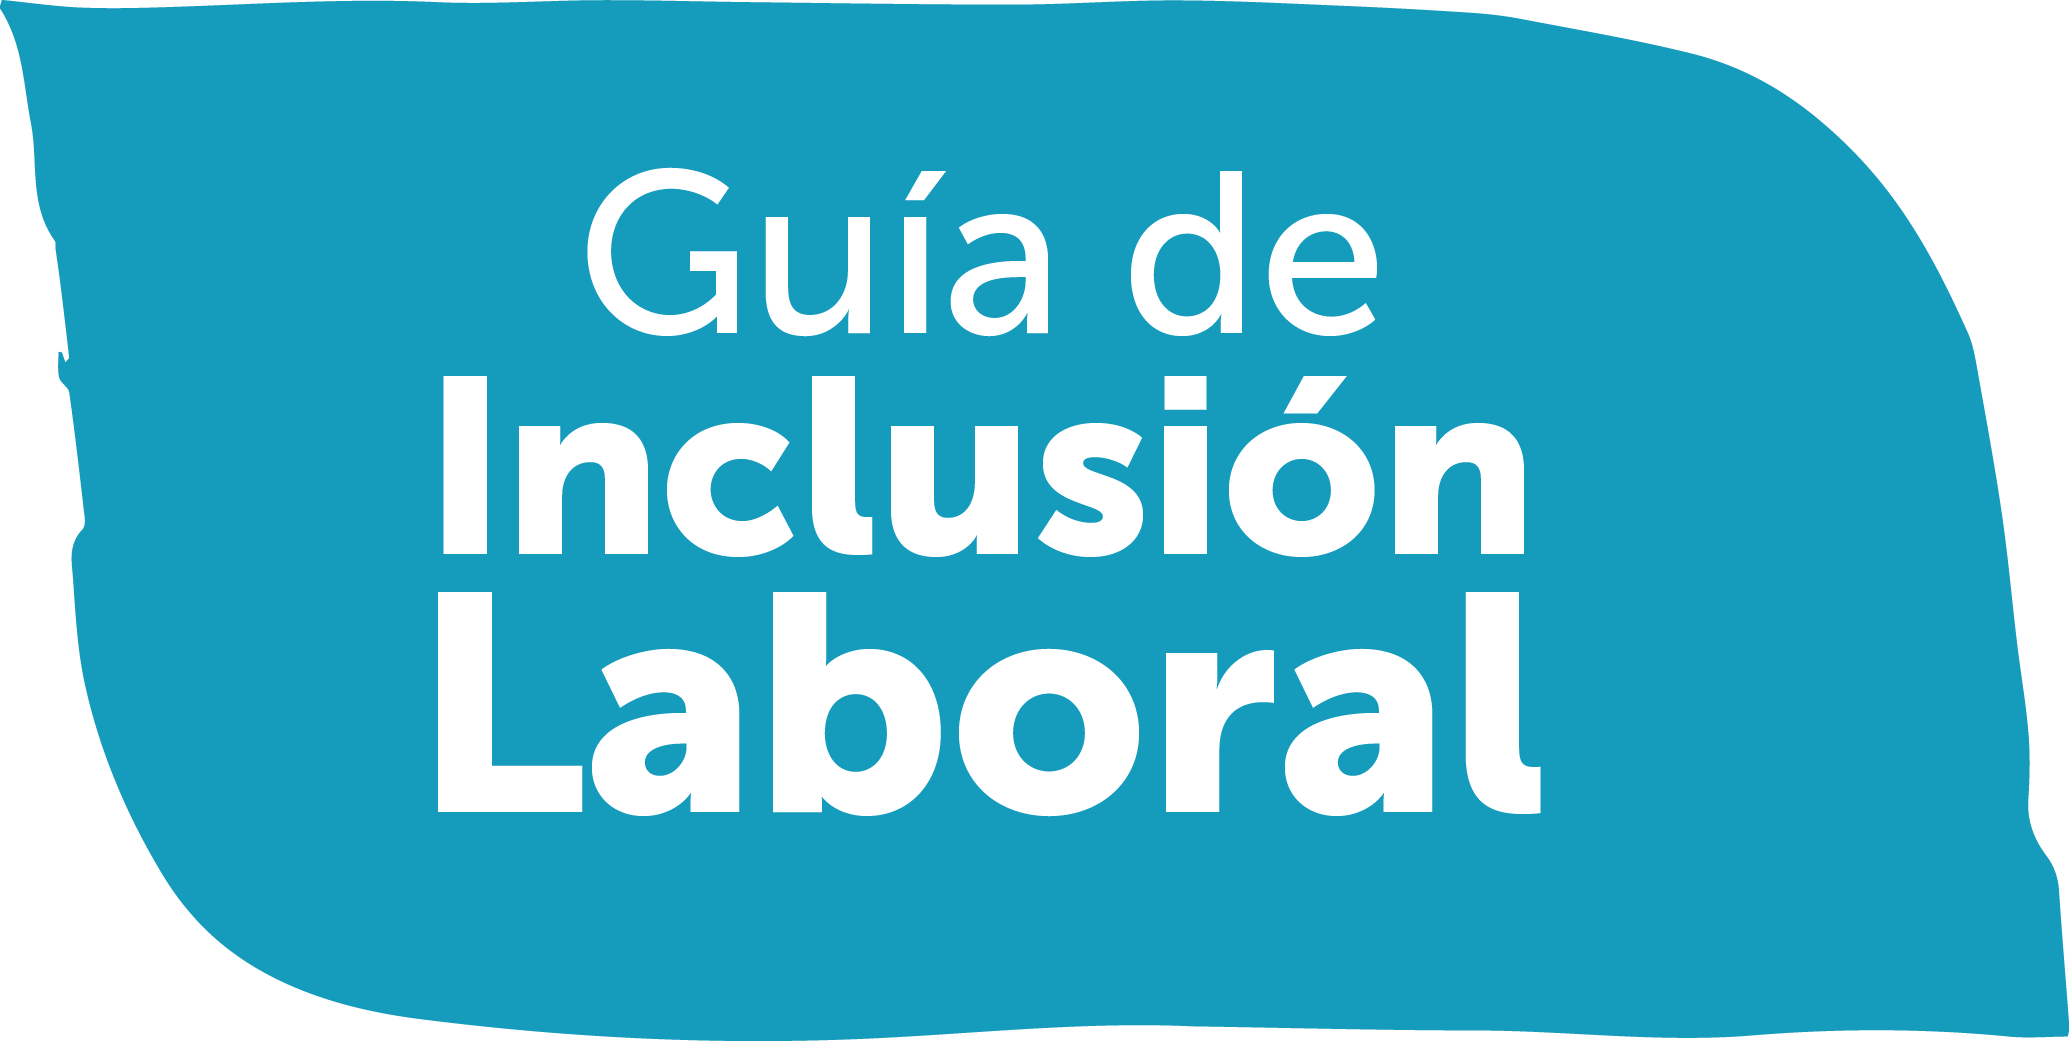 guia de inclusion laboral